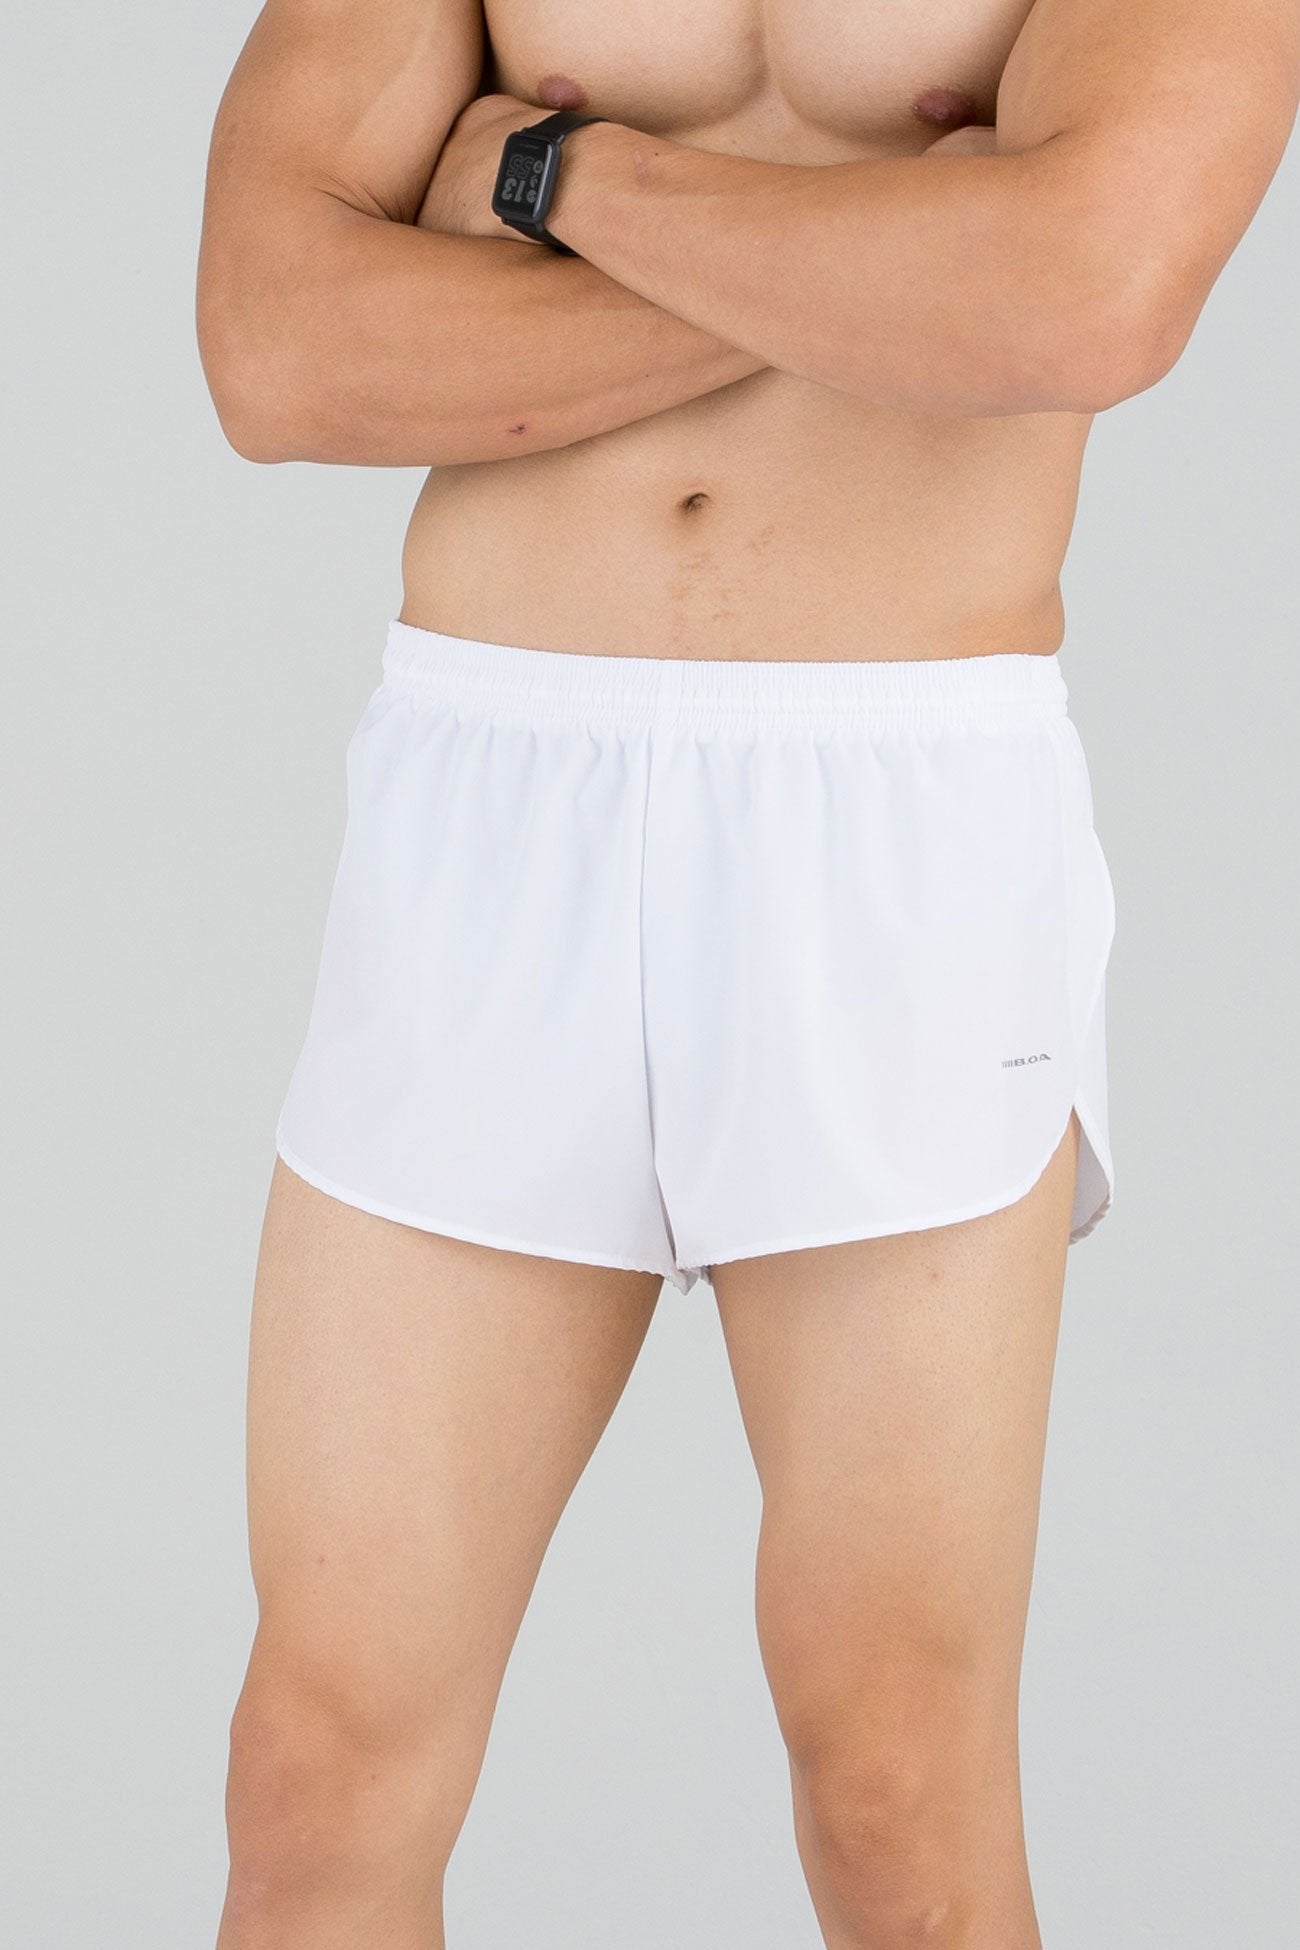 mens shorts